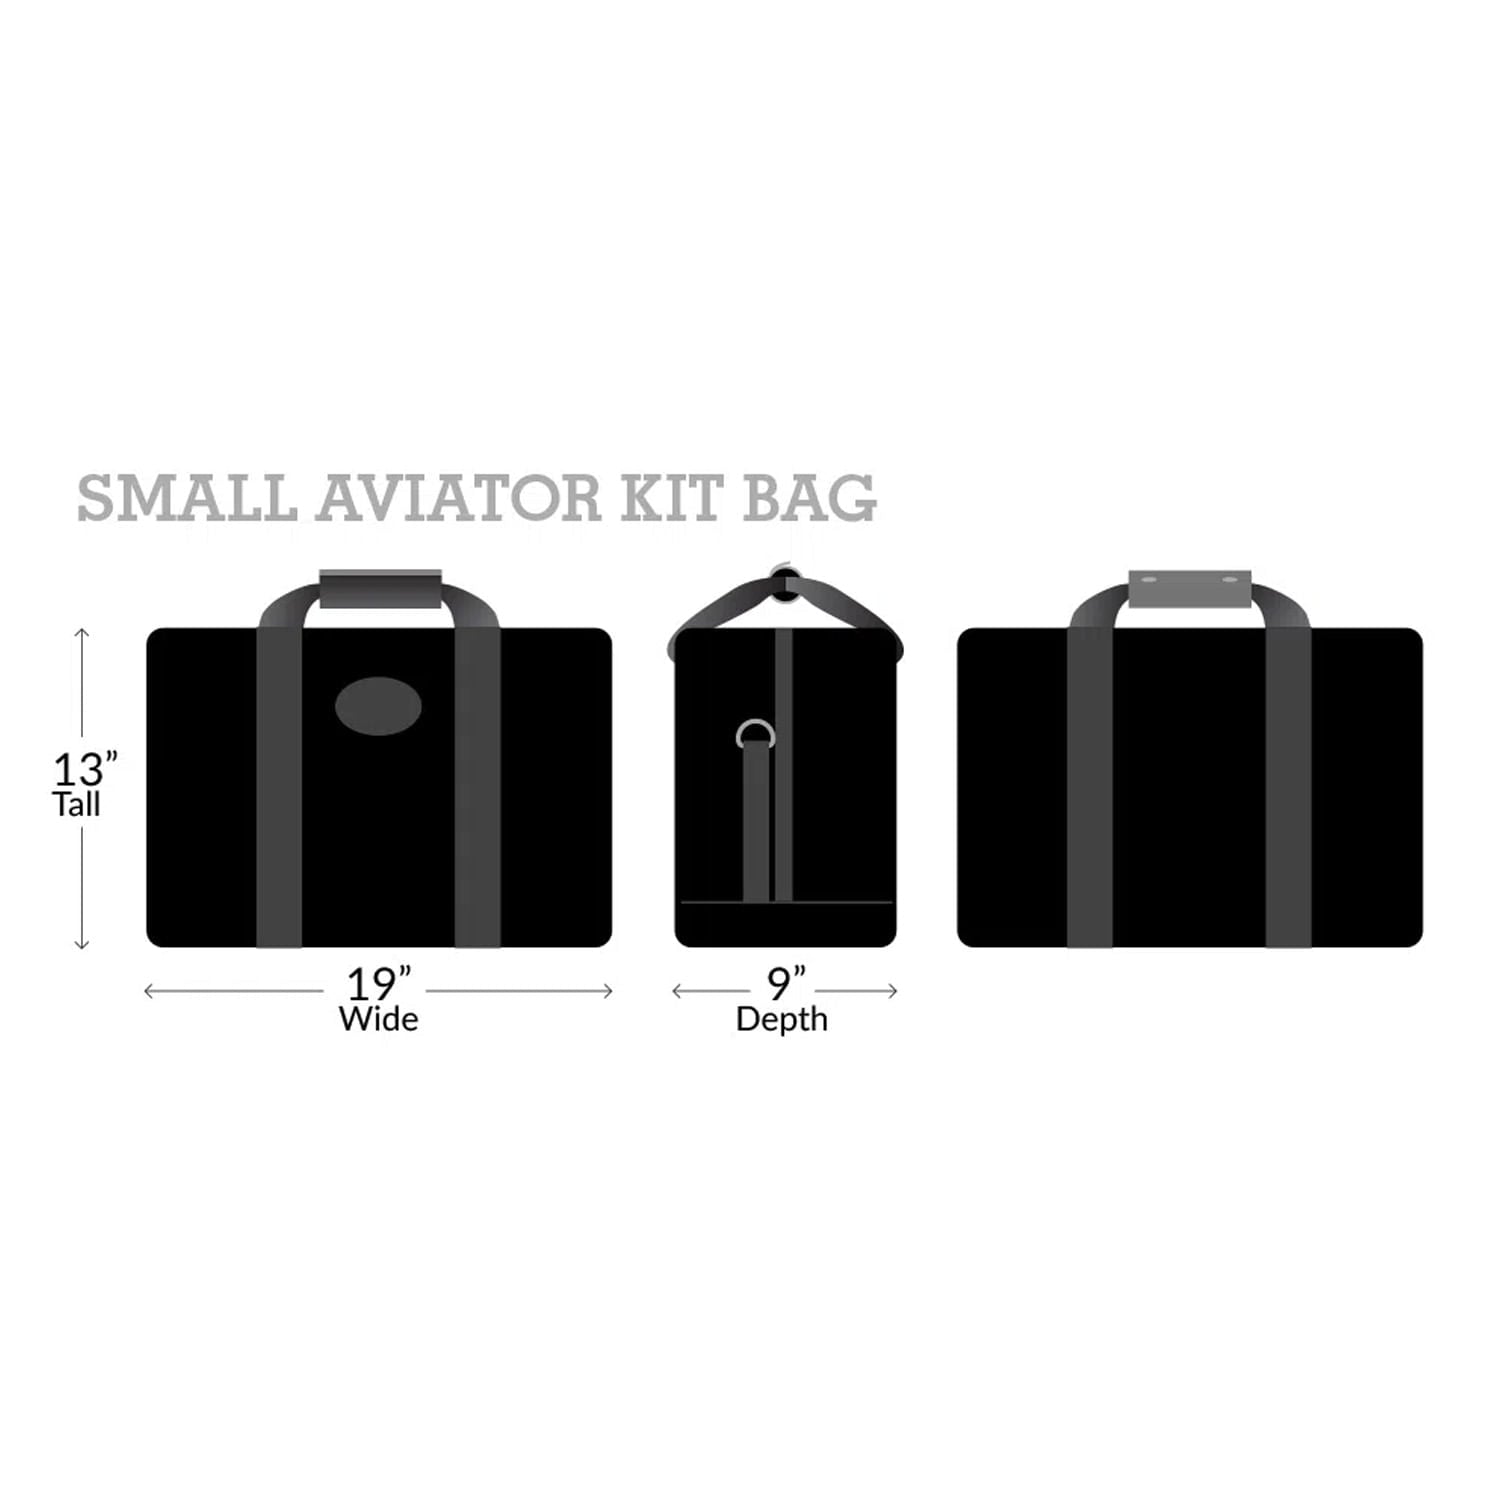 Small Aviator Kit Bag